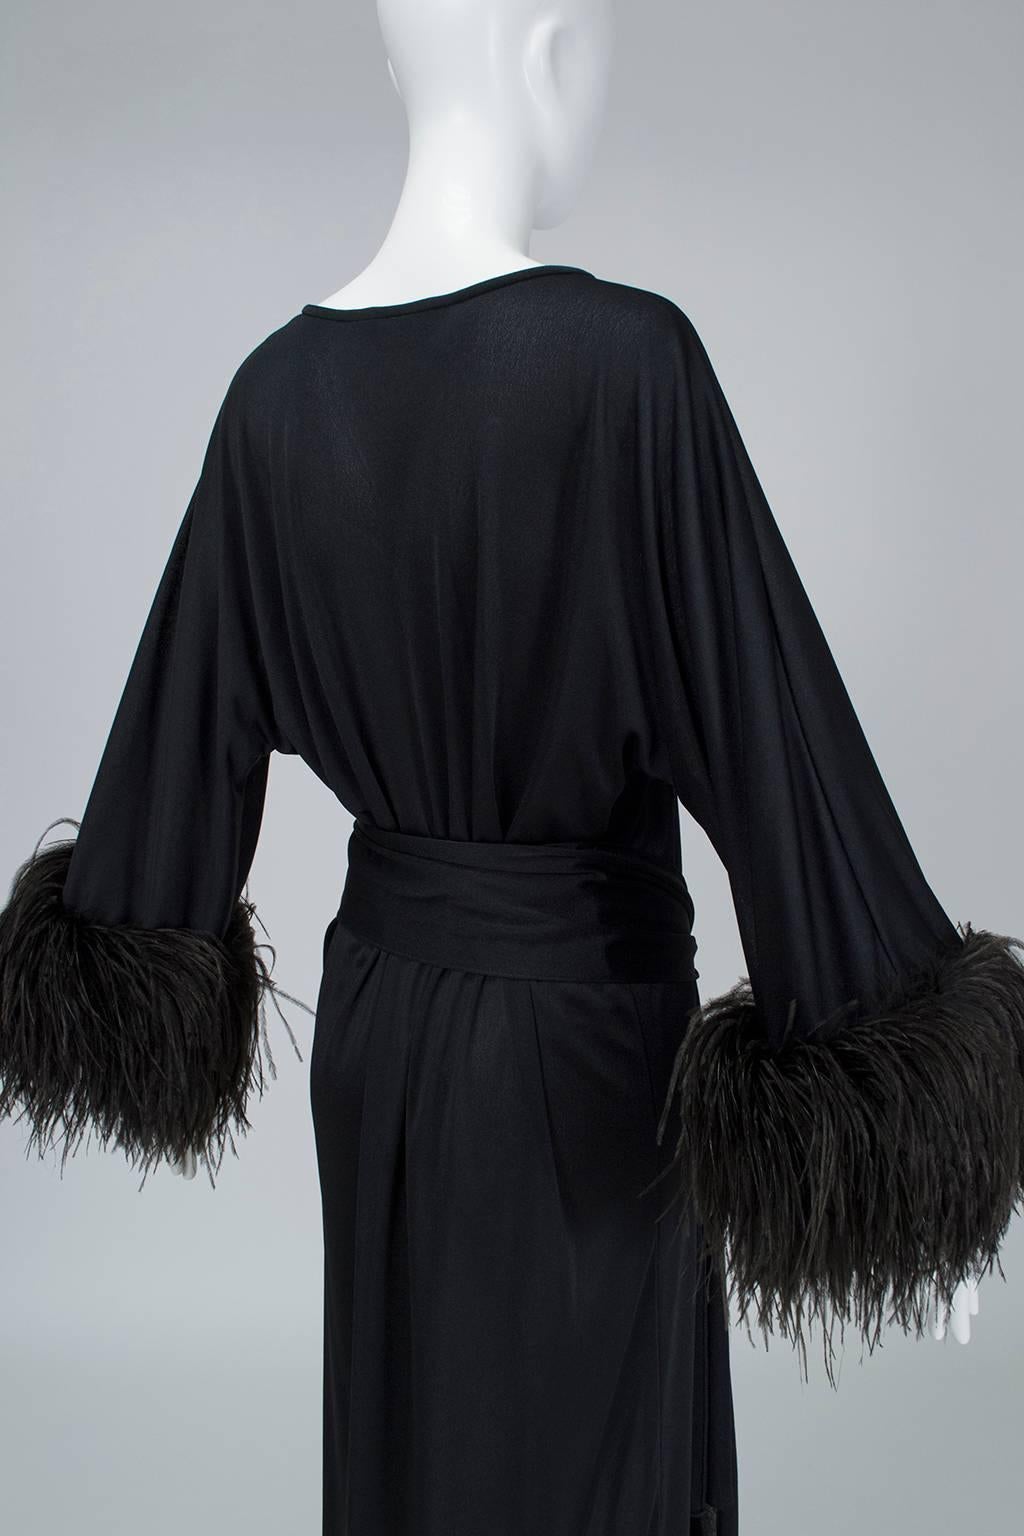 Women's Mr. Blackwell Black Ostrich Feather Cuff Midi Dress, 1960s